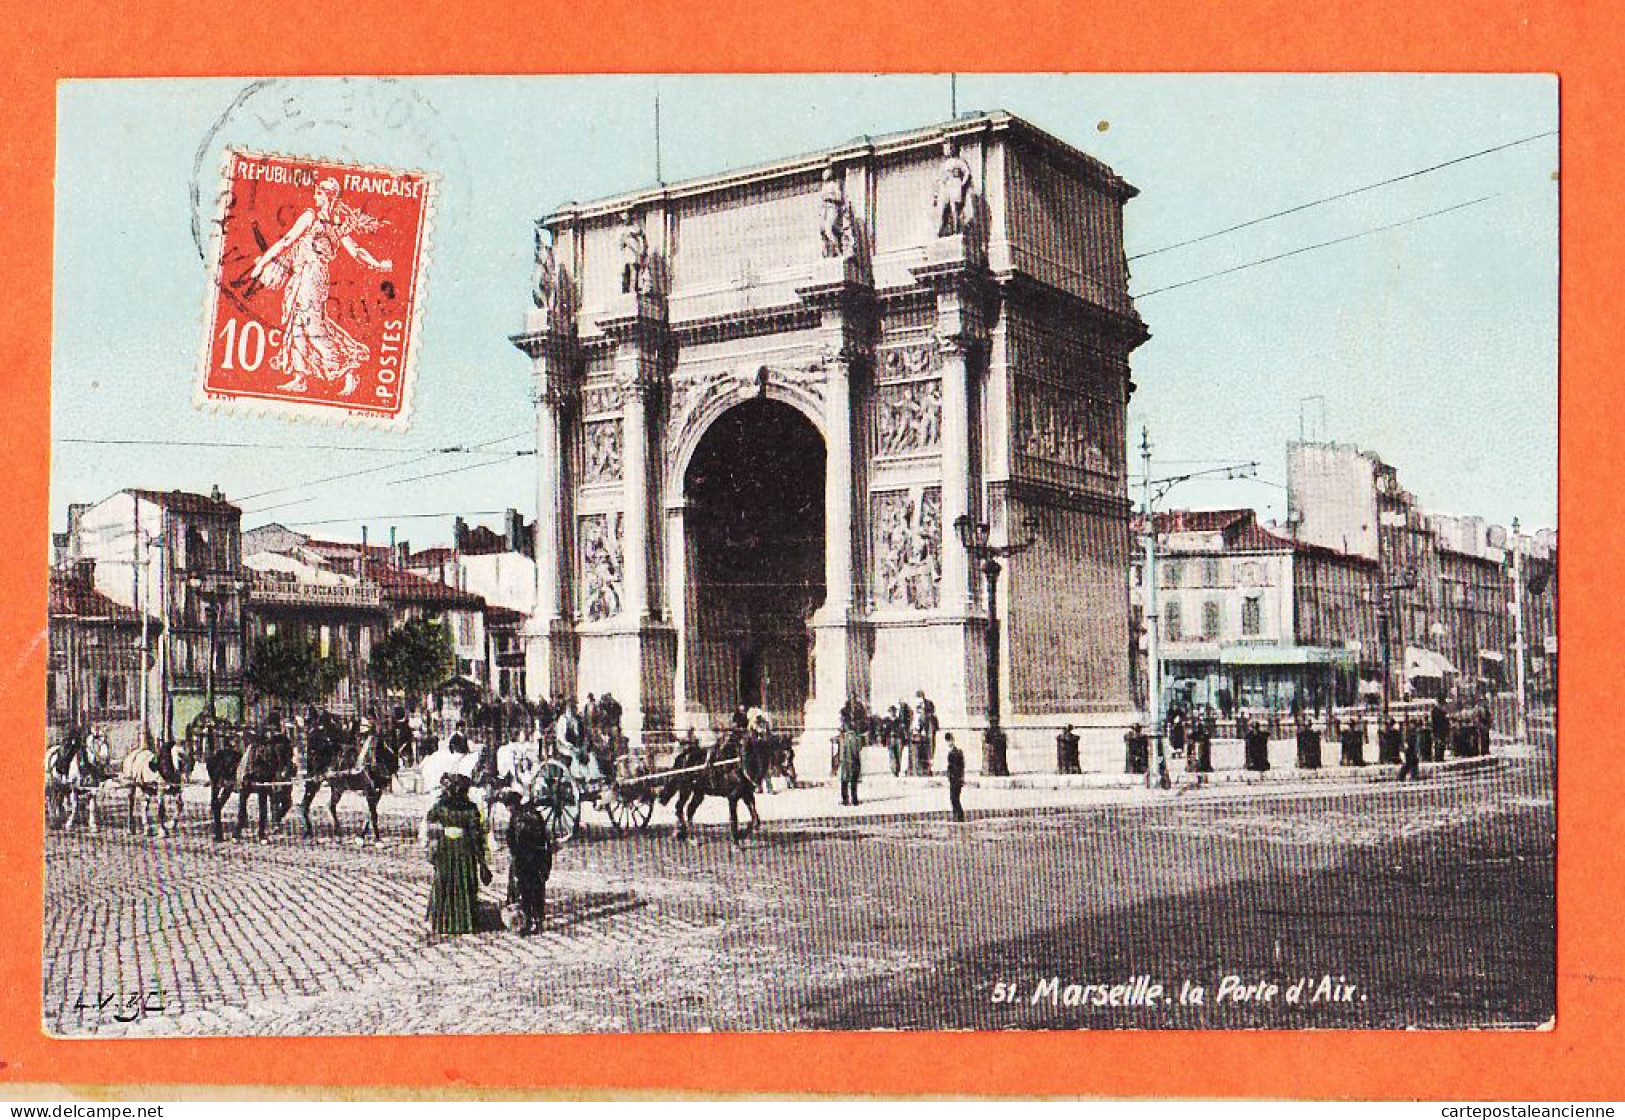 35013 / Aqua-Photo LEOPOLD VERGER 51 MARSEILLE (13) La Porte D' AIX 1910 à GARIDOU Mercerie Port-Vendres - The Canebière, City Centre